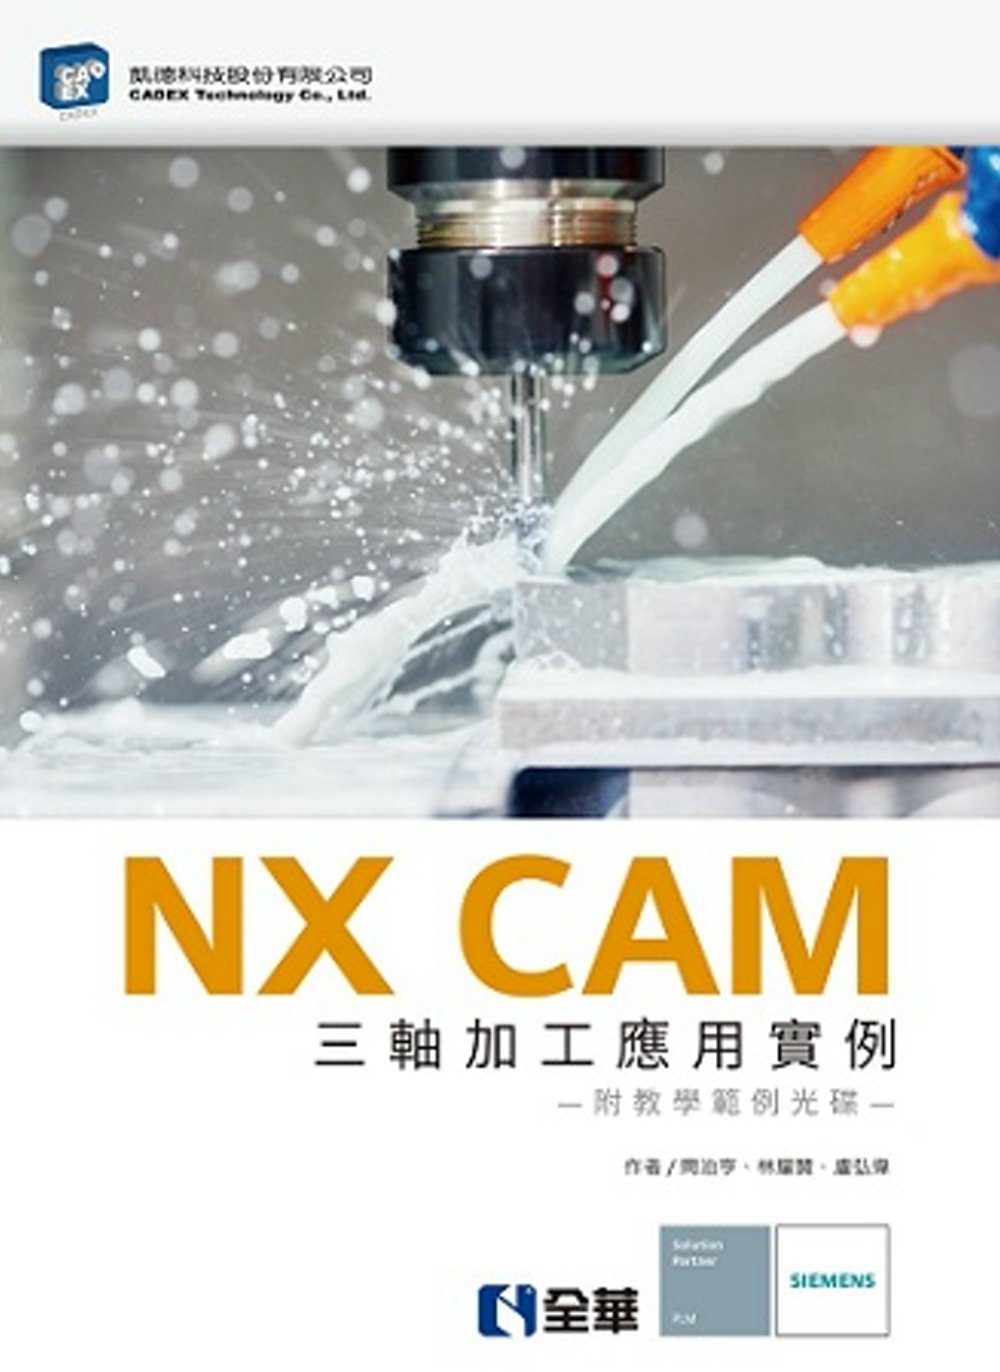 NX CAM 三軸加工應用實例(附教學範例光碟)